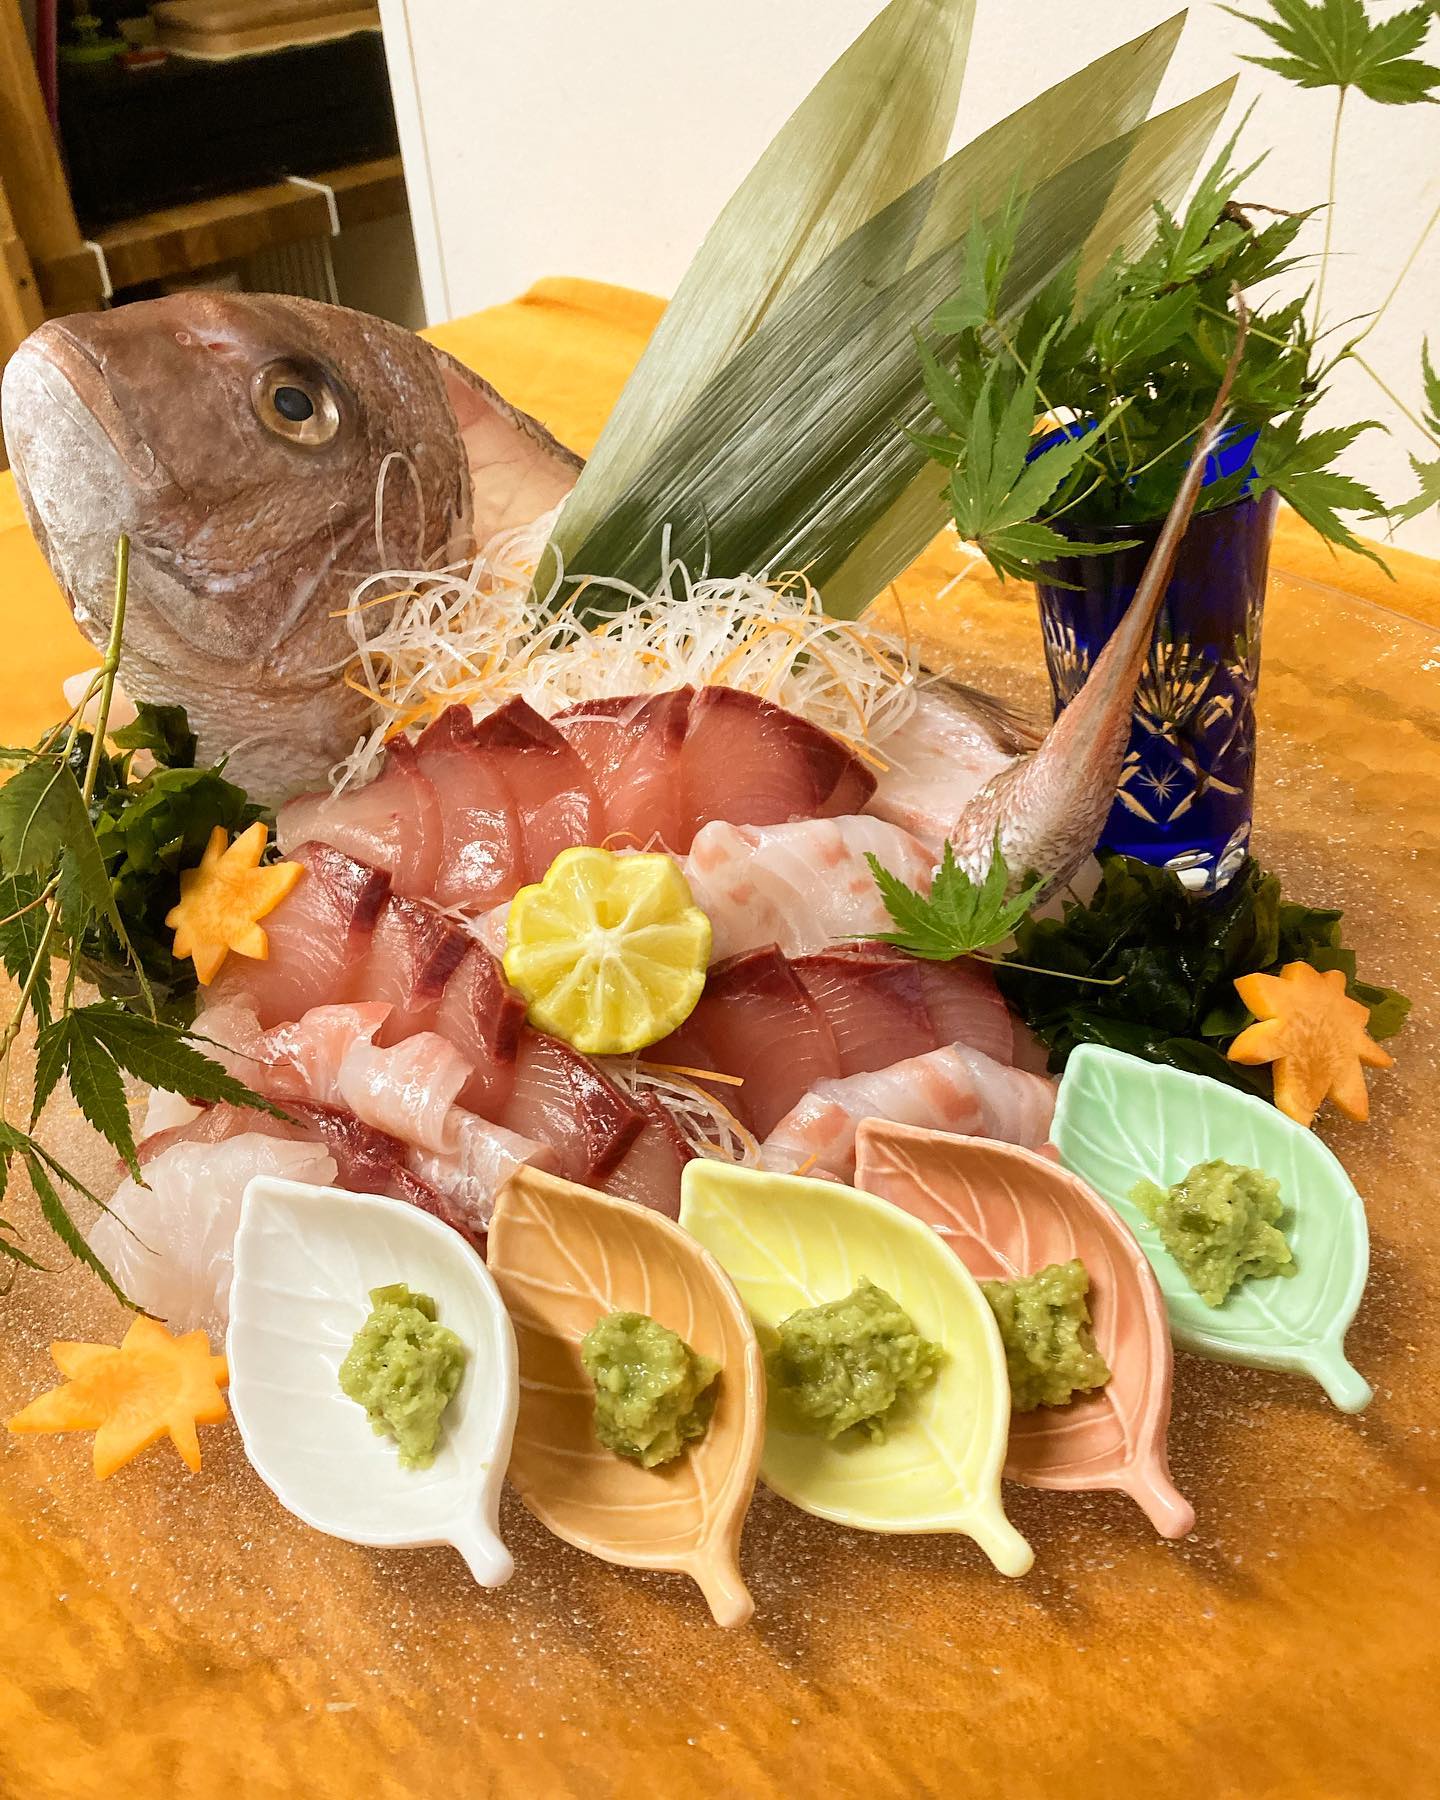 【おはしどころ菜でしこ】
〜鯛の姿造り️〜
⁡
⁡
⁡
七五三のお祝い料理️
⁡
お昼の貸し切りコースで
お出ししました
⁡
⁡
鯛の白と鰤の赤で
紅白を演出してあります！
⁡
⁡
そのまま
お刺身はもちろん、
⁡
しゃぶしゃぶのお出汁で
鯛のしゃぶしゃぶ、
鰤のしゃぶしゃぶ、
⁡
⁡
寿司めしをお出しして
さらにしゃぶしゃぶ寿司、
⁡
⁡
鯛のかぶとと
残った鯛の身で
鯛めしにして。
⁡
⁡
余すところなく
鯛を堪能していただきました
⁡
⁡
⁡
⁡
【埼玉県本庄駅徒歩30秒】
【月曜定休】
【駐車場️3台有り】
【インスタのメッセージお問合せ】
【詳しくはプロフールまで】
⁡
⁡
⁡
⁡
＃アルバイト募集中です️
⁡